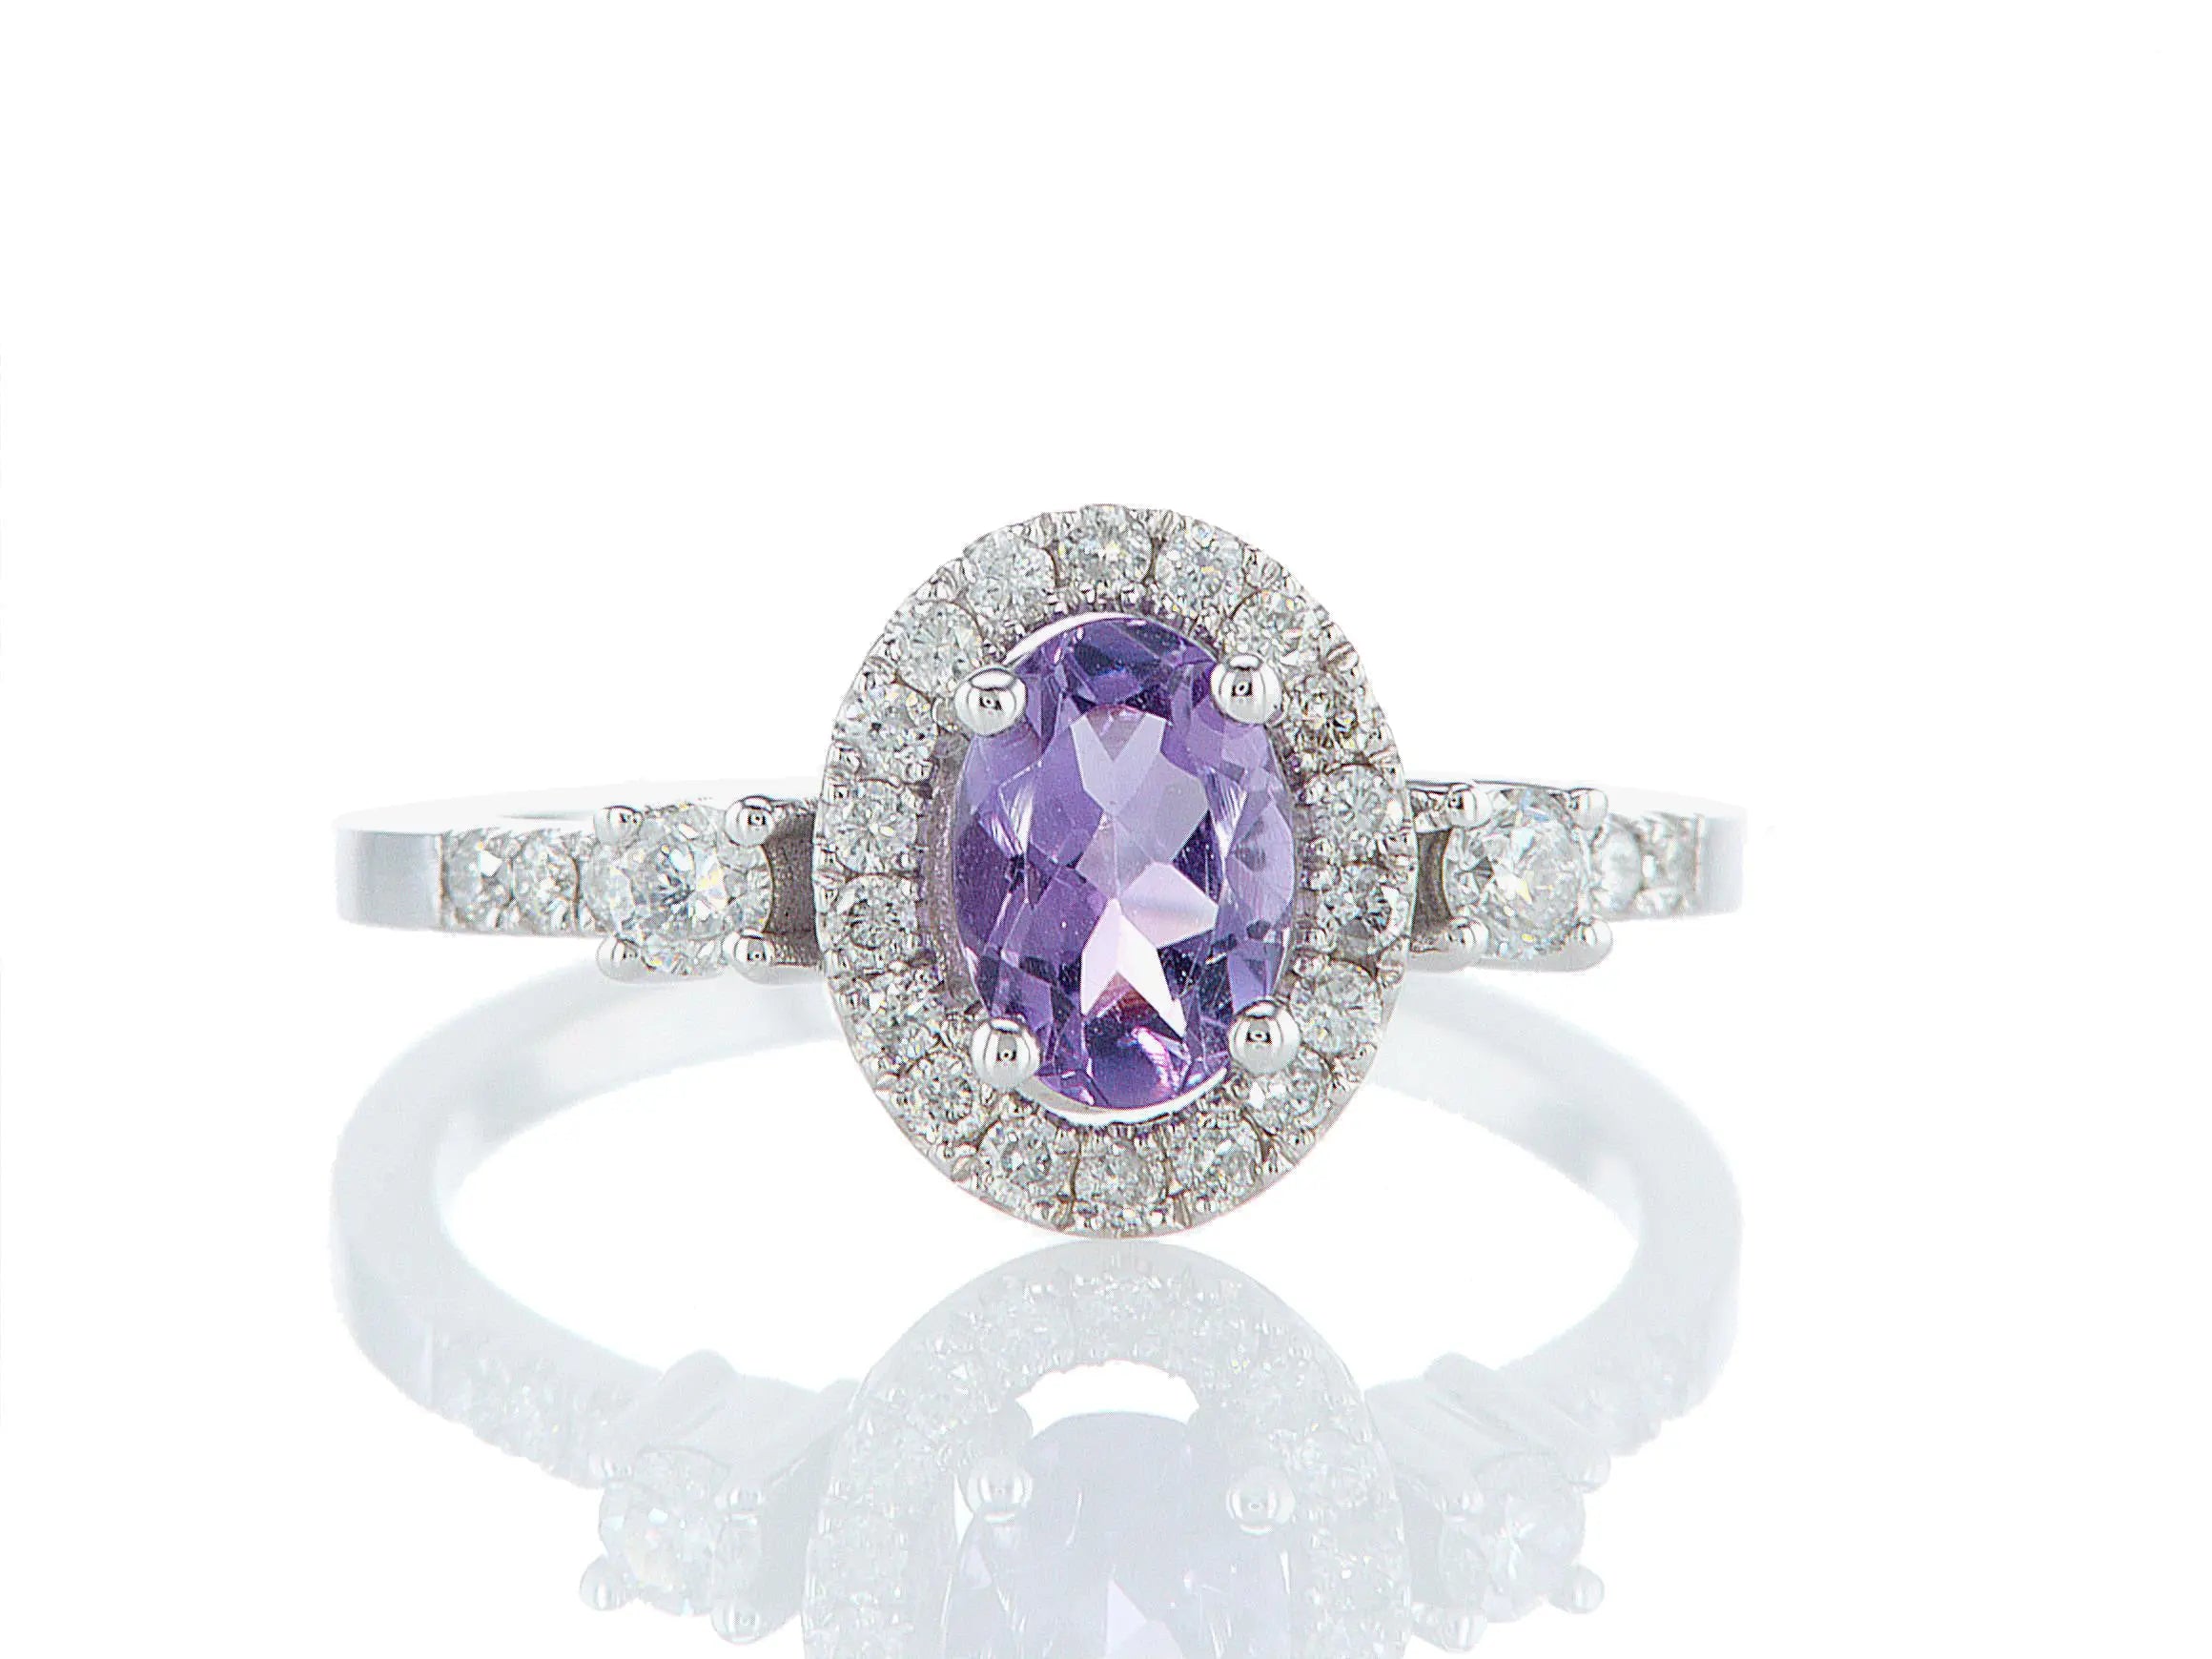 טבעת מעוצבת ורד Fermond Jewelery